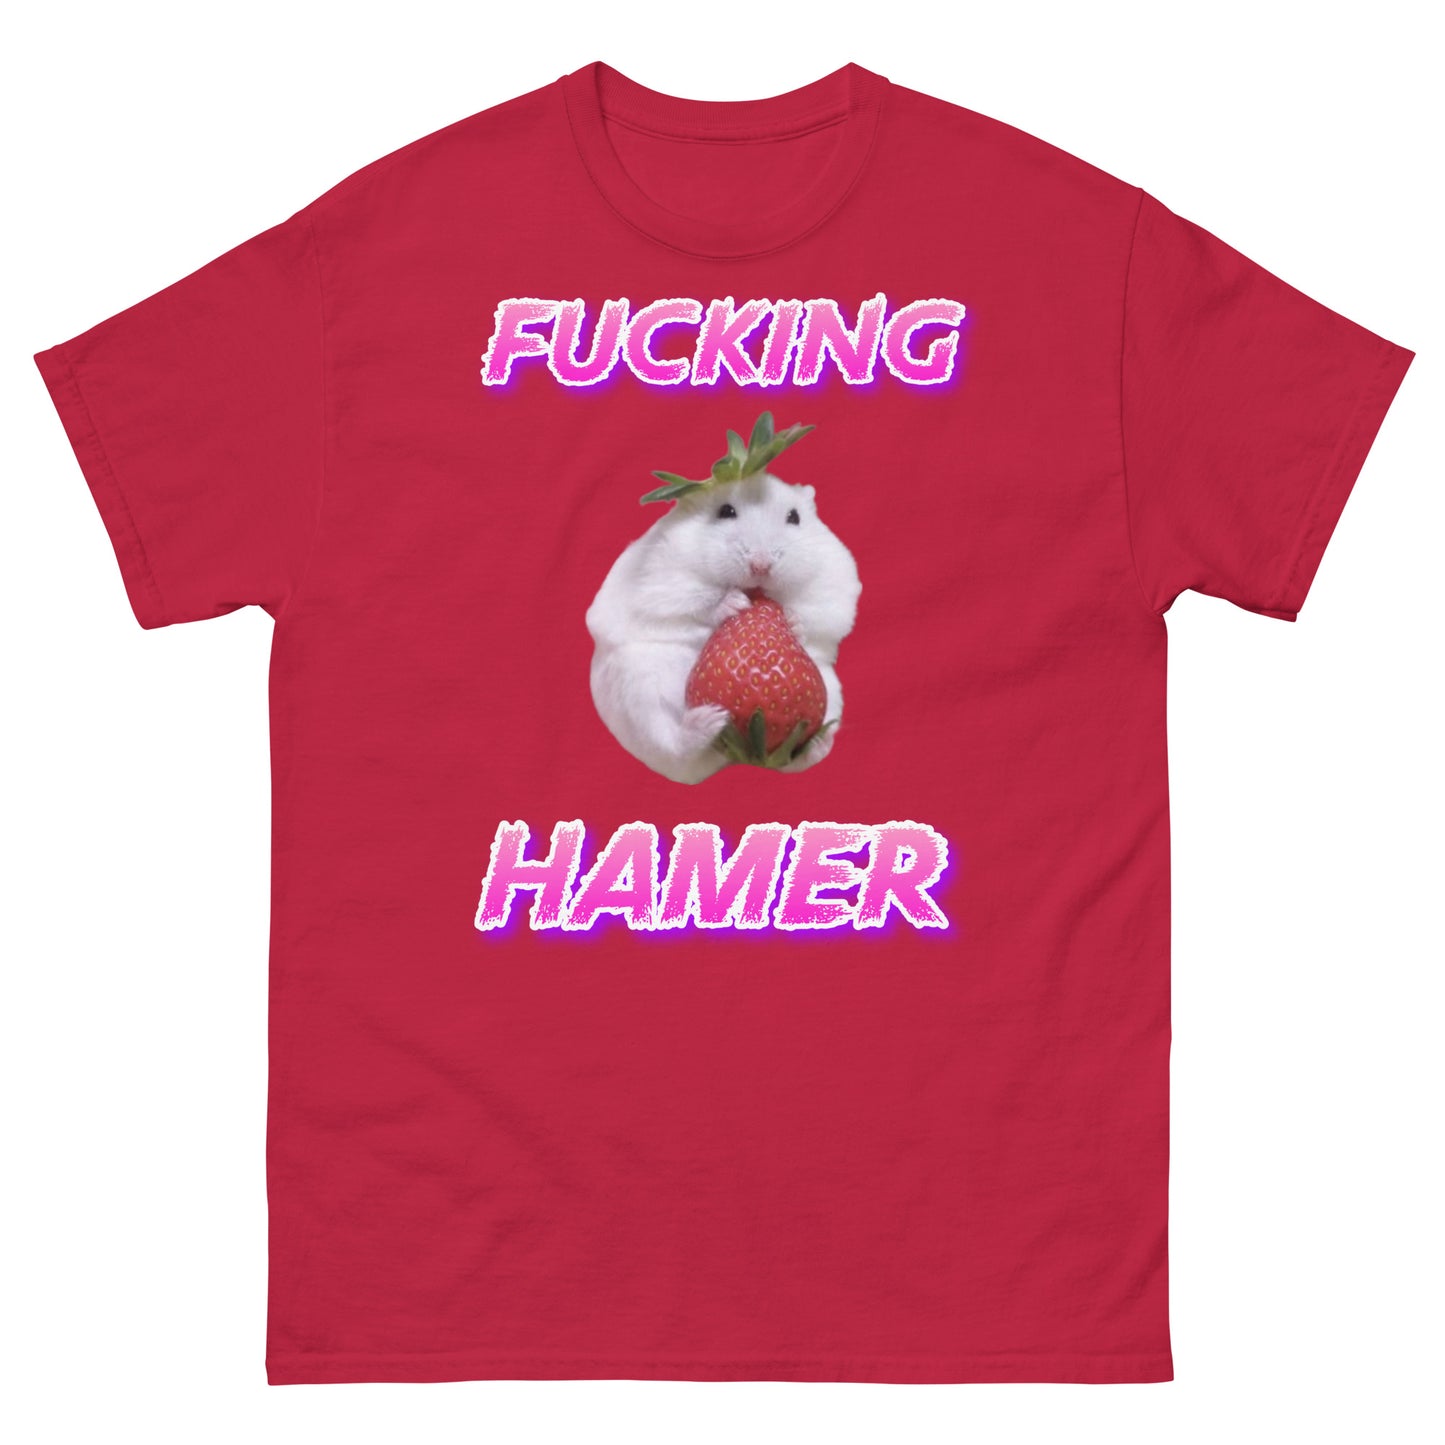 Hamster / Hamer Cringey Tee